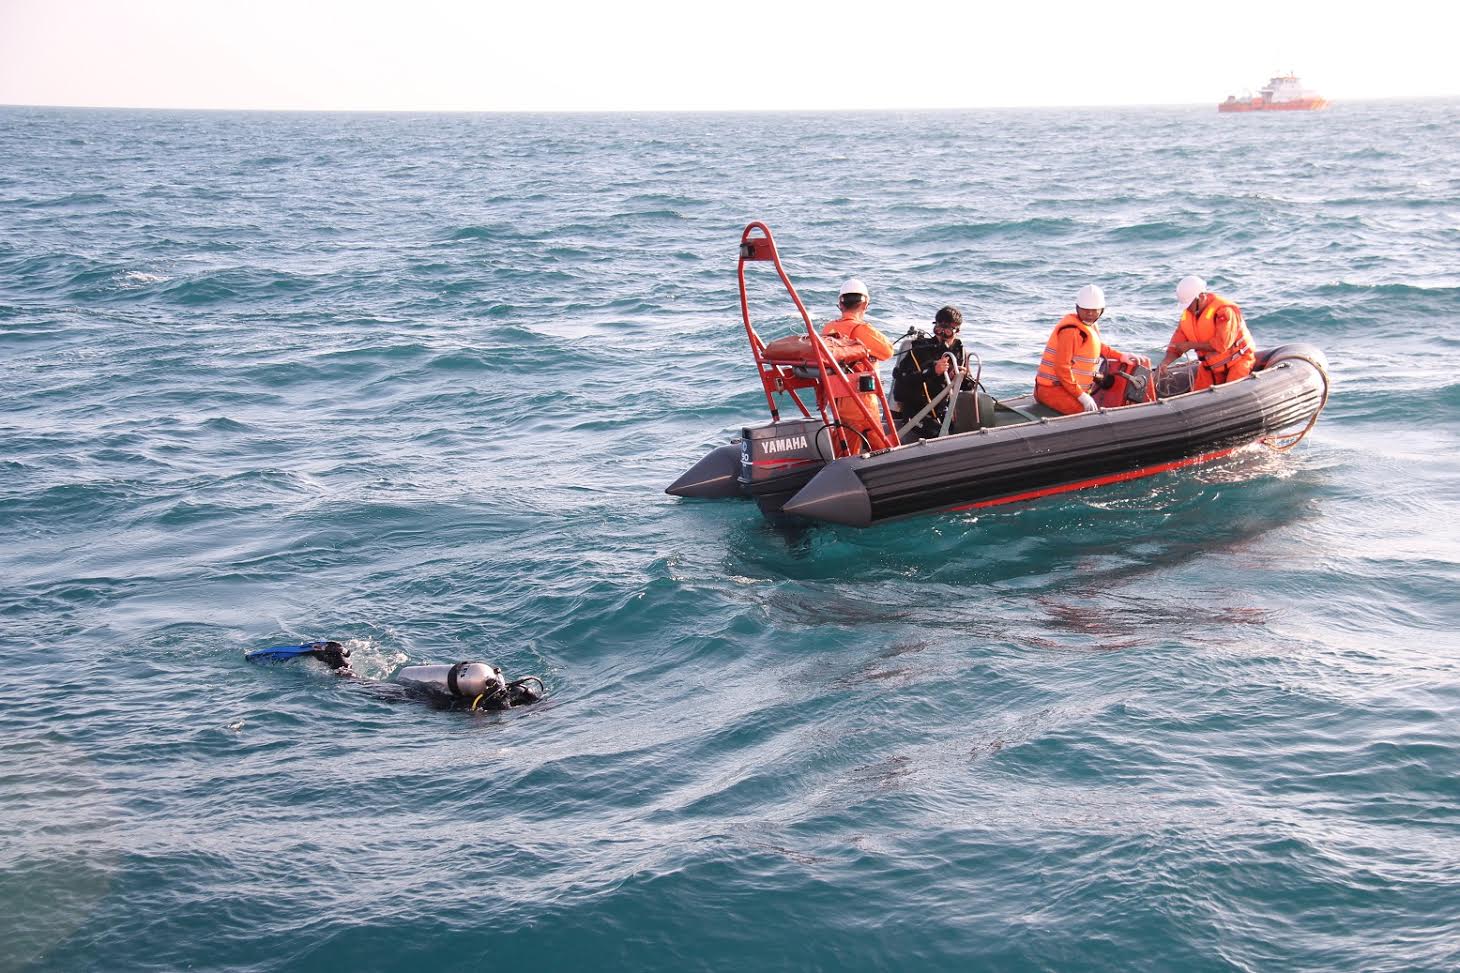 Các thi thể được tìm thấy sẽ được các tàu tìm kiếm đưa vào bờ trong ngày 1/4 để bàn giao cho cơ quan chức năng và gia đình nạn nhân vụ chìm tàu Hải Thành 26. Ảnh: Thanh niên 